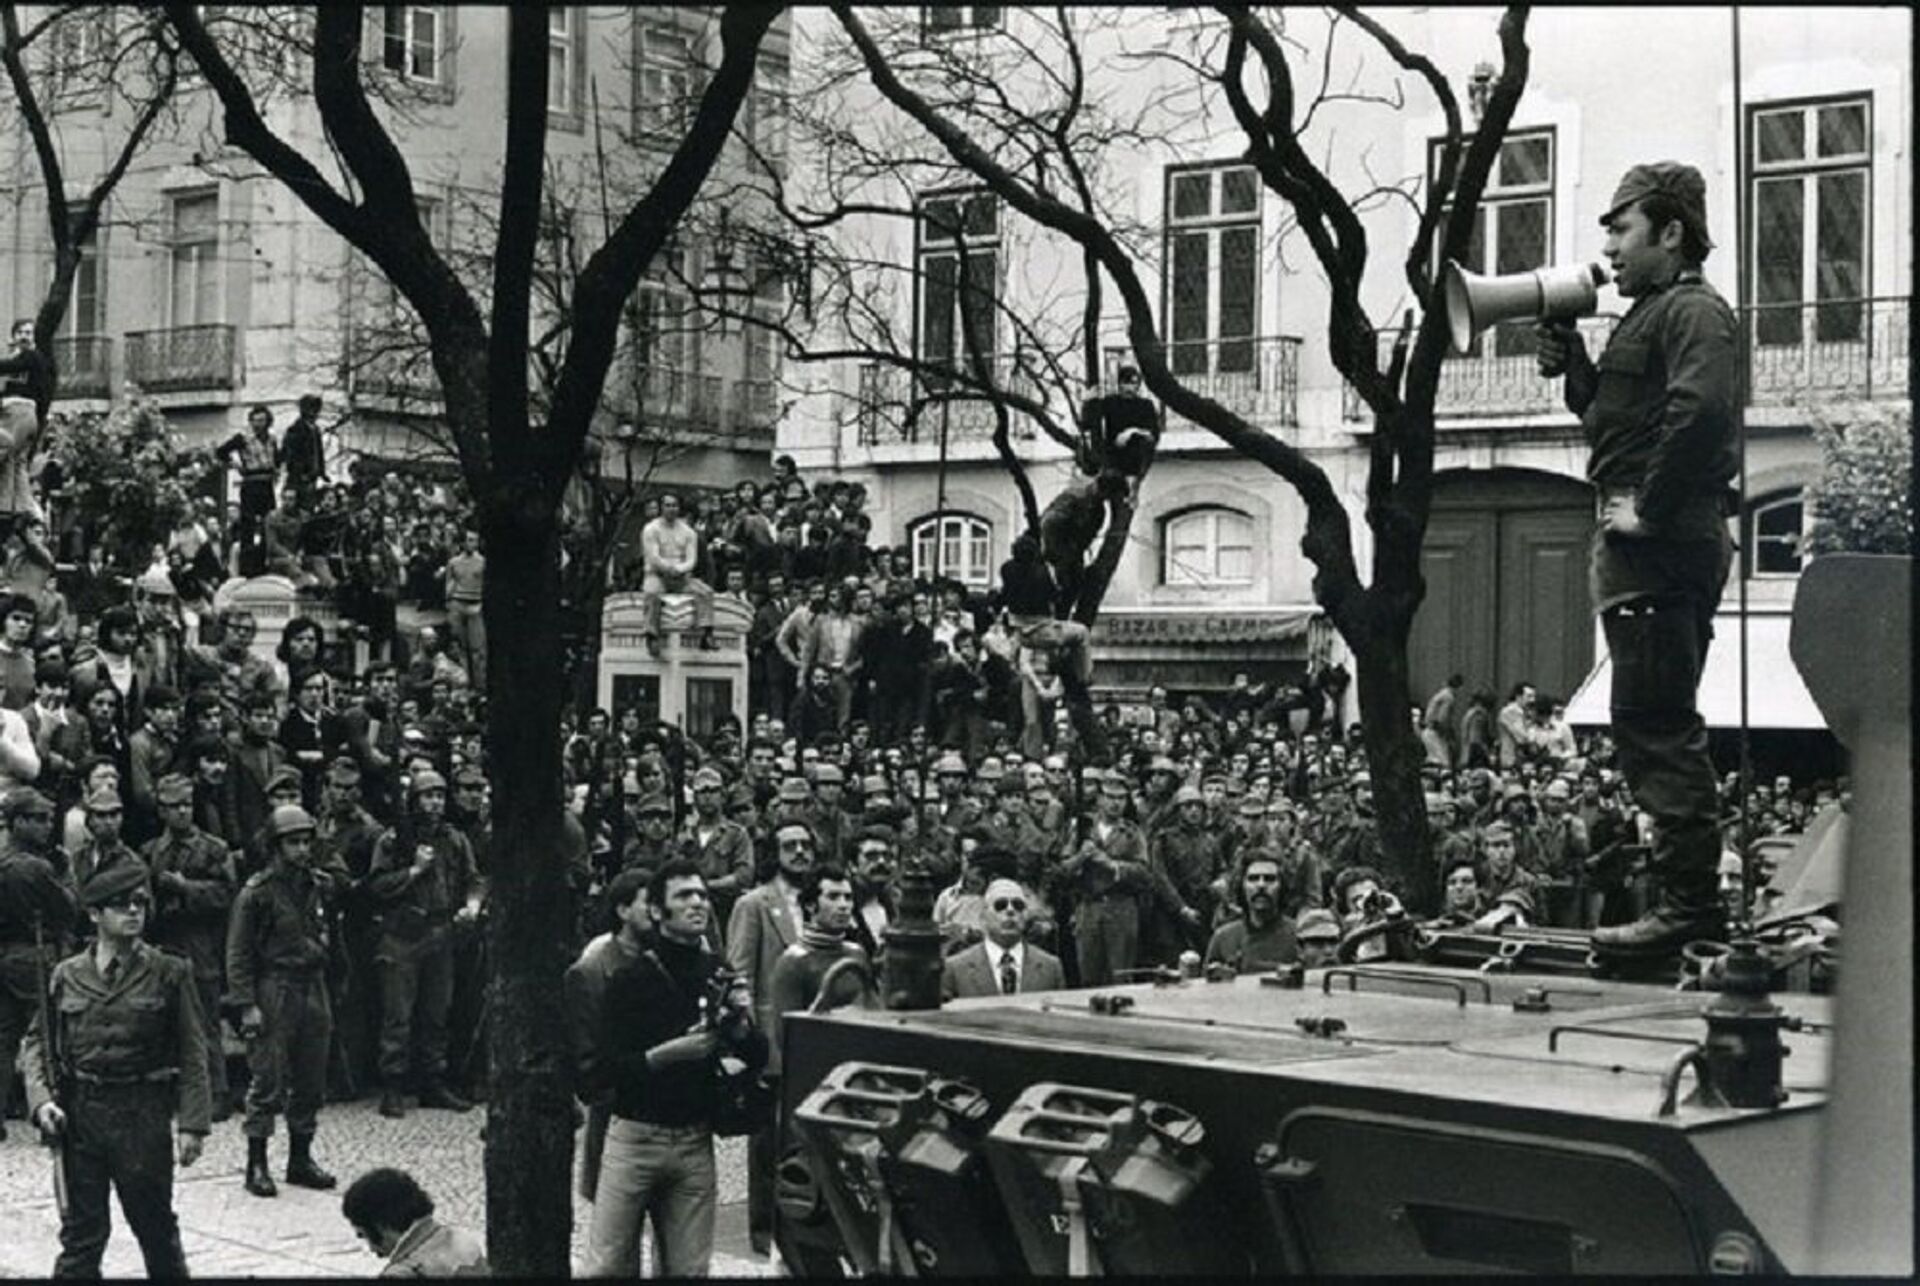 Revolução dos Cravos: comemorações do 25 de Abril voltam às ruas portuguesas, mas com precauções - Sputnik Brasil, 1920, 25.04.2021